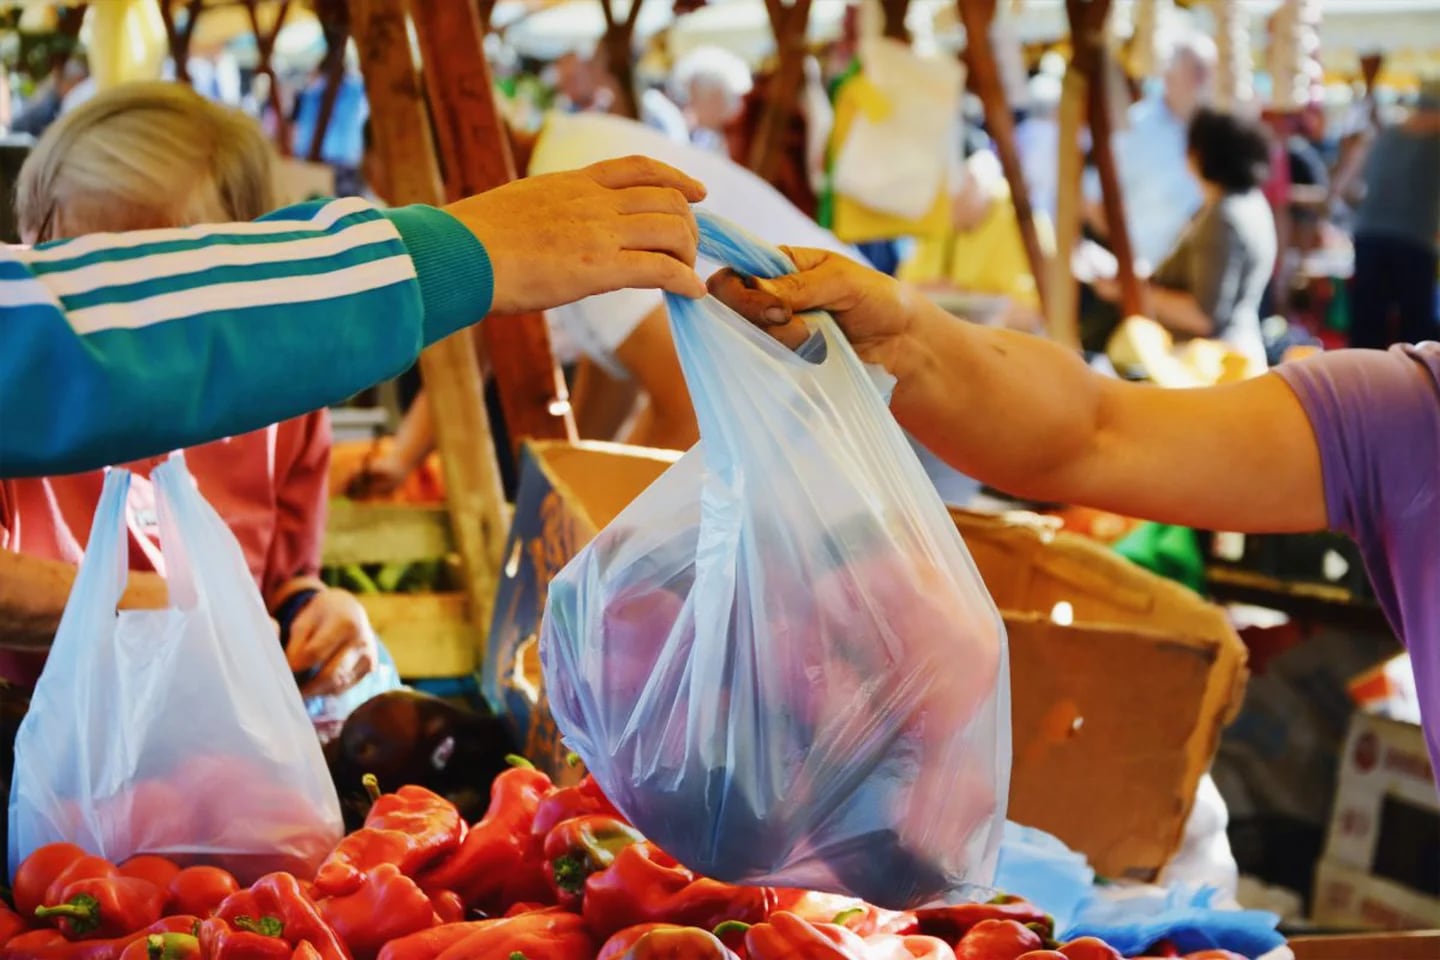 Las bolsas plásticas pequeñas tienen los días contados en Colombia